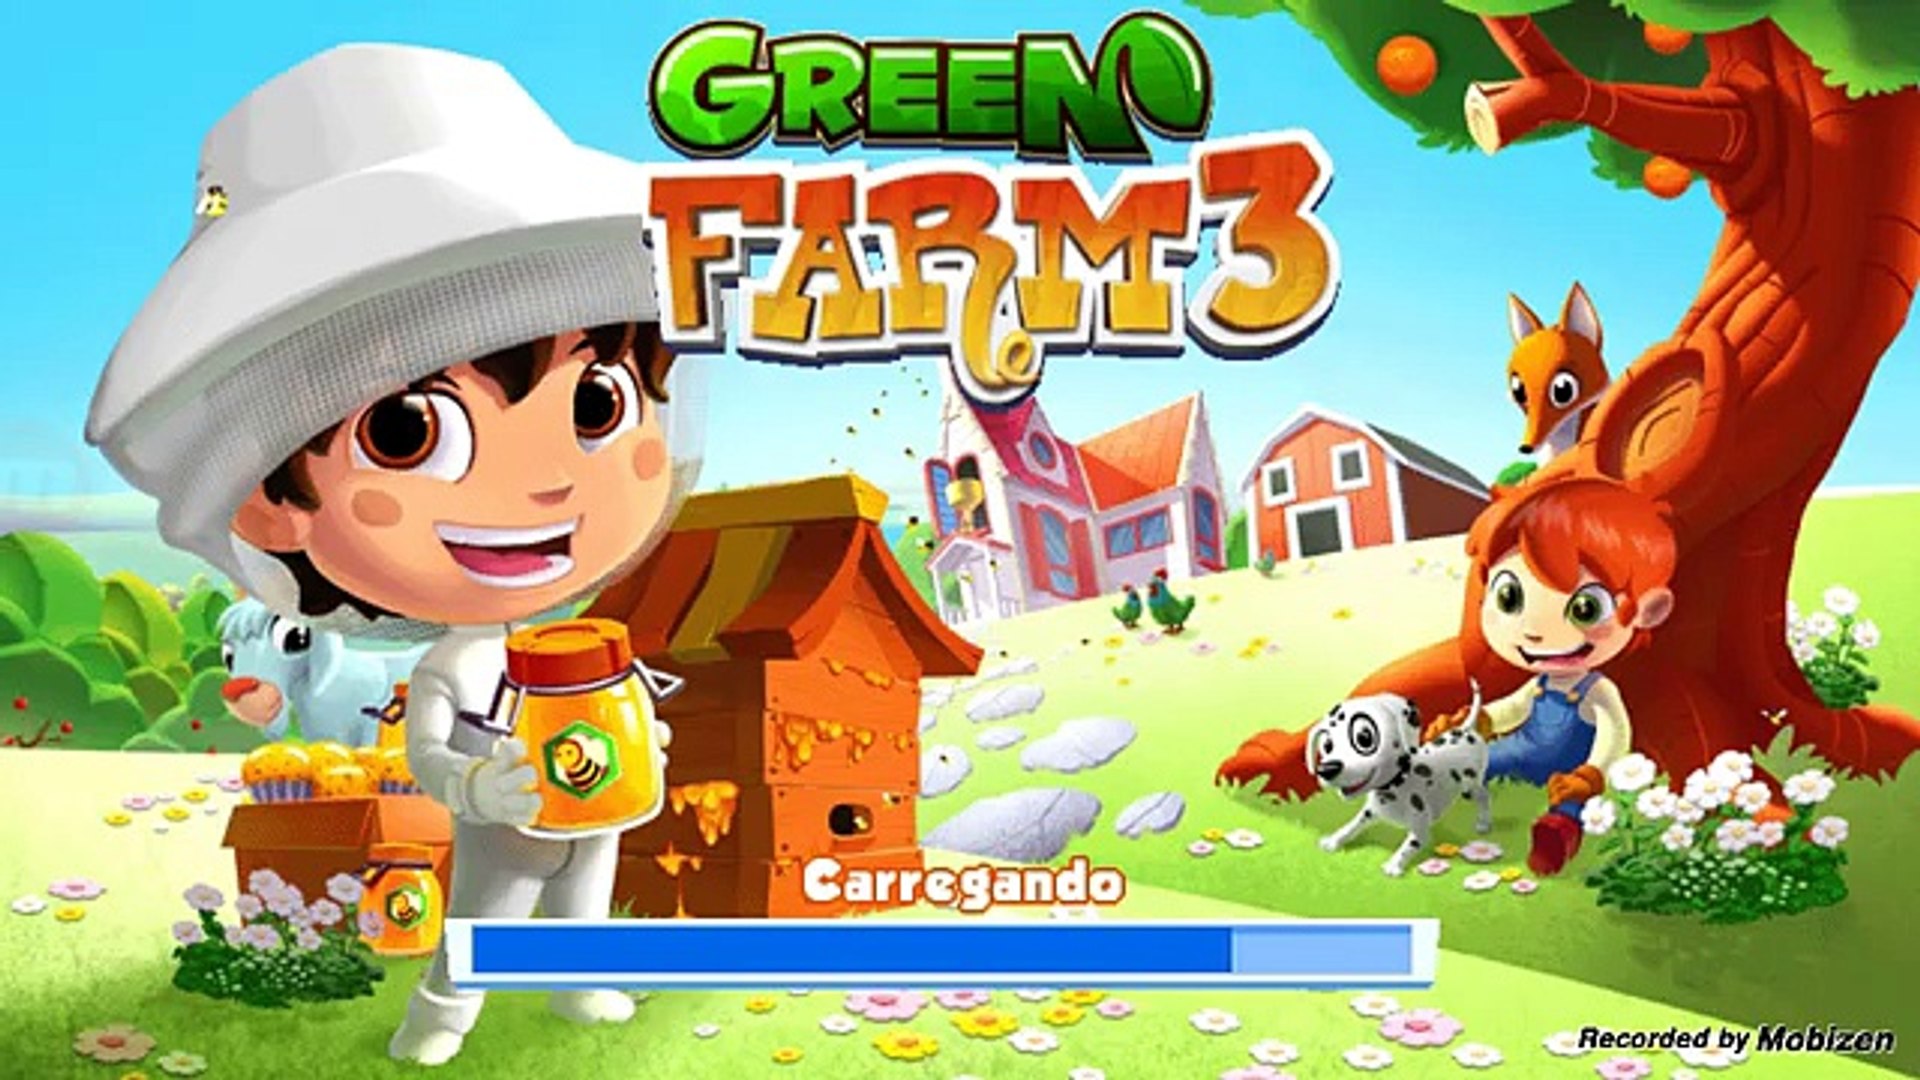 Como ganhar eventos Fazenda Verde 3 Green Farm 3 - video Dailymotion